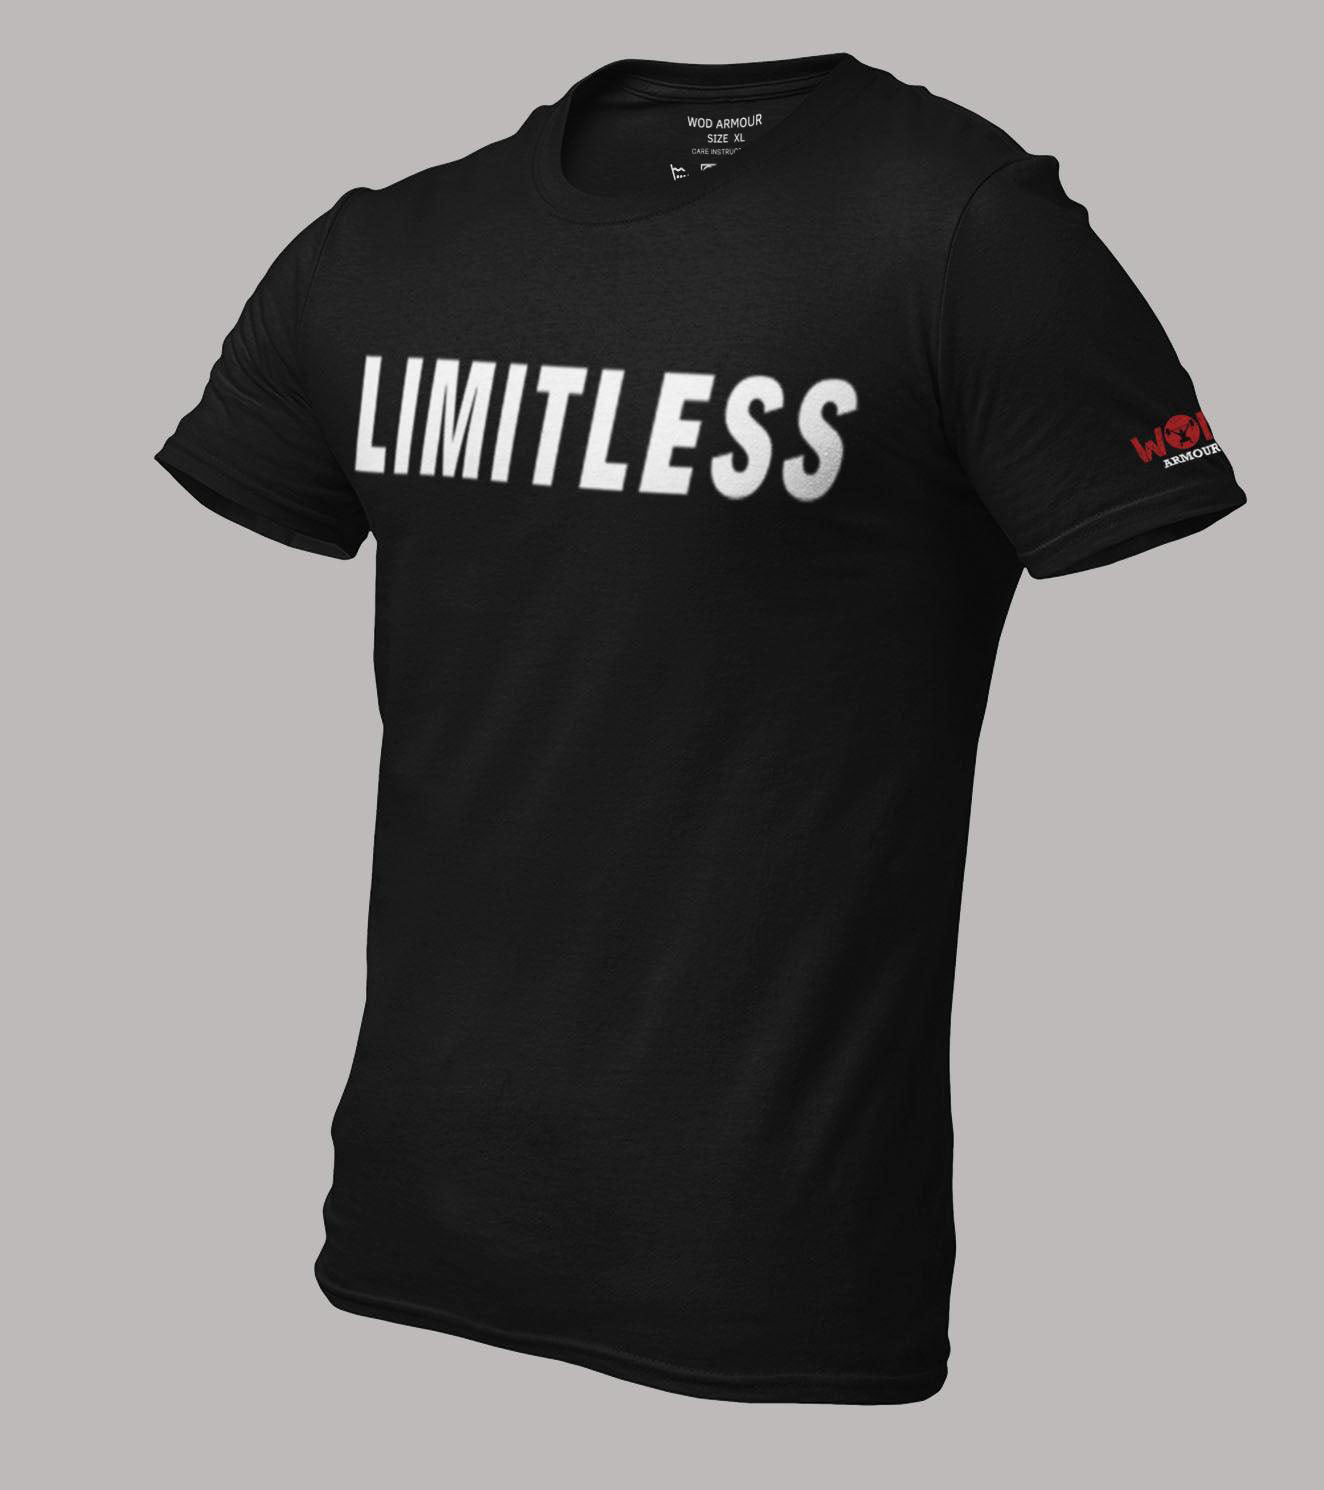 Men's "LIMITLESS" T-Shirt